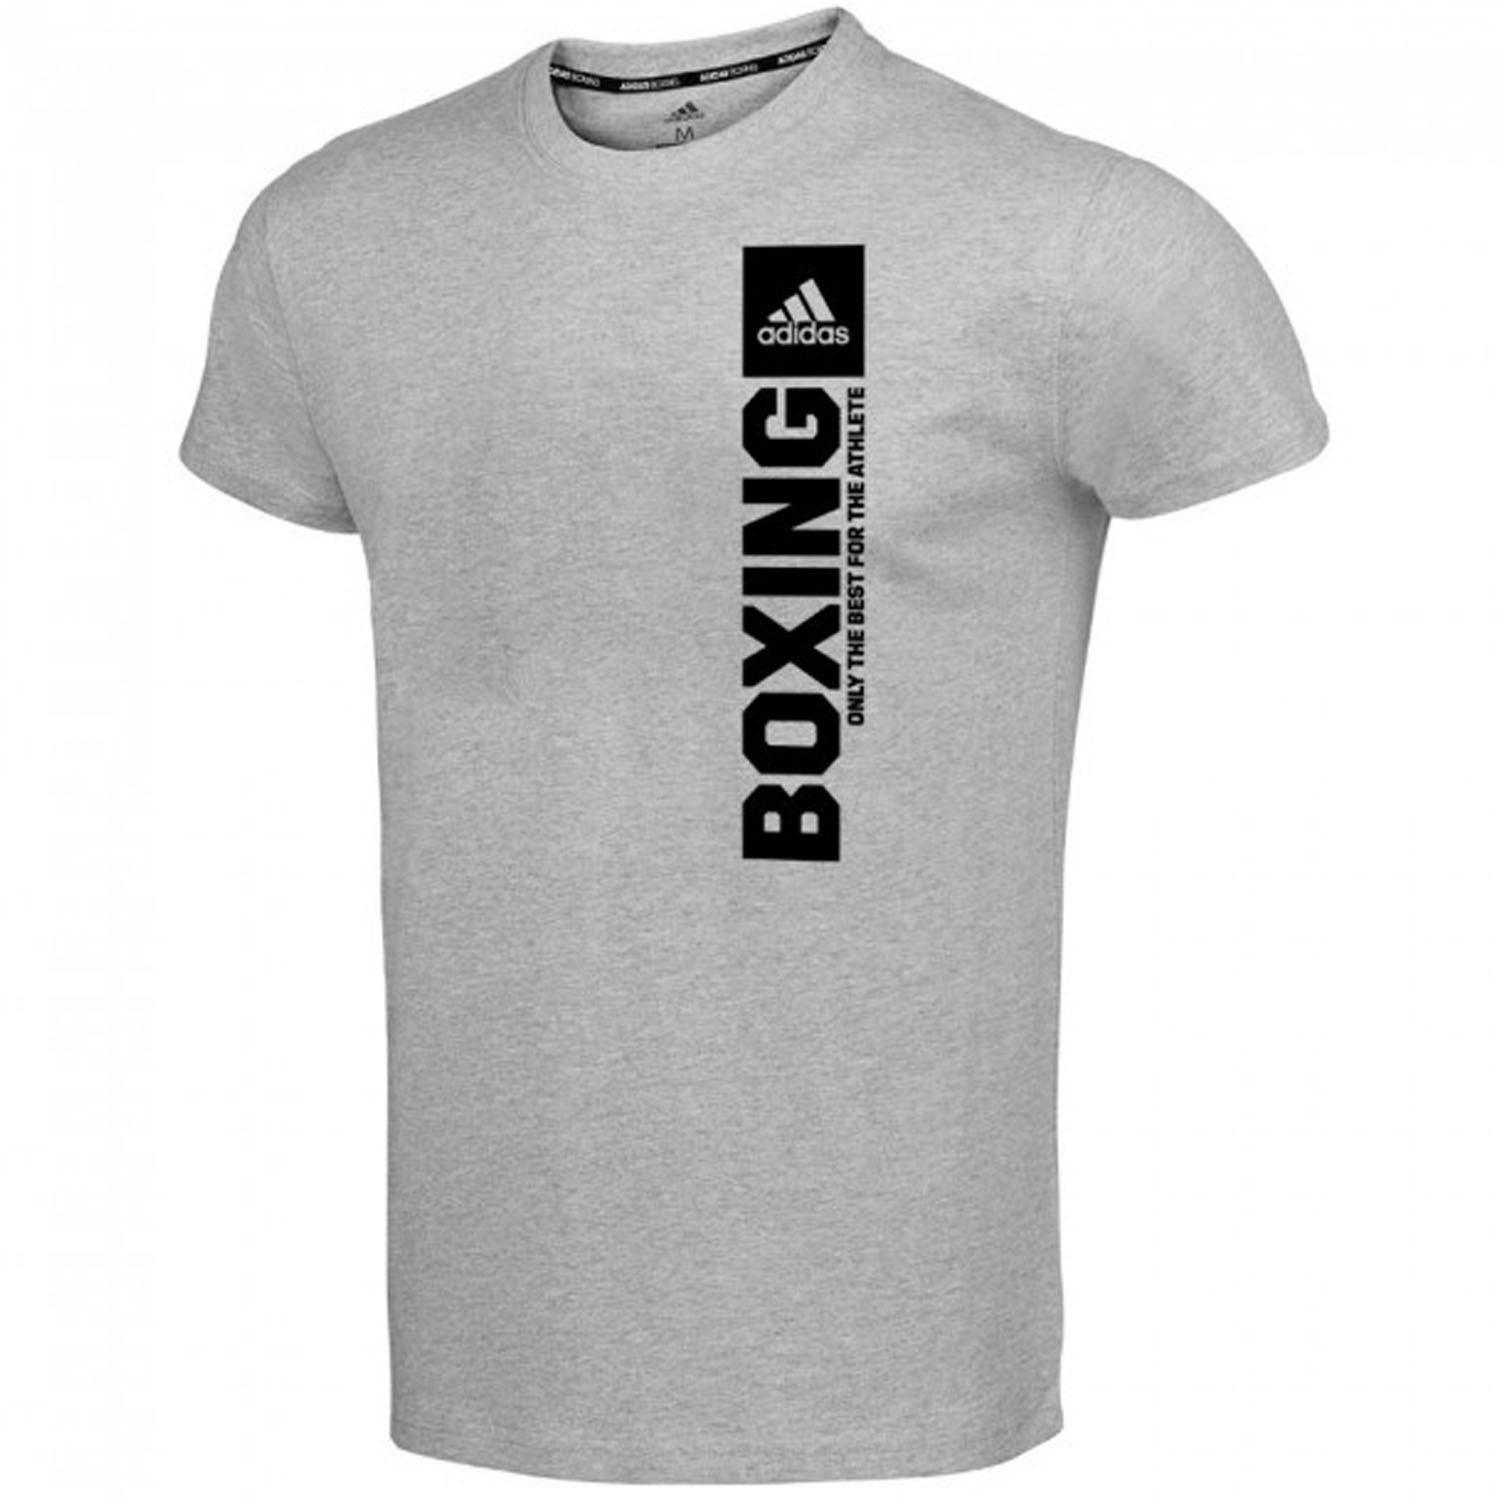 adidas T-Shirt, Community Vertical Boxing, grau